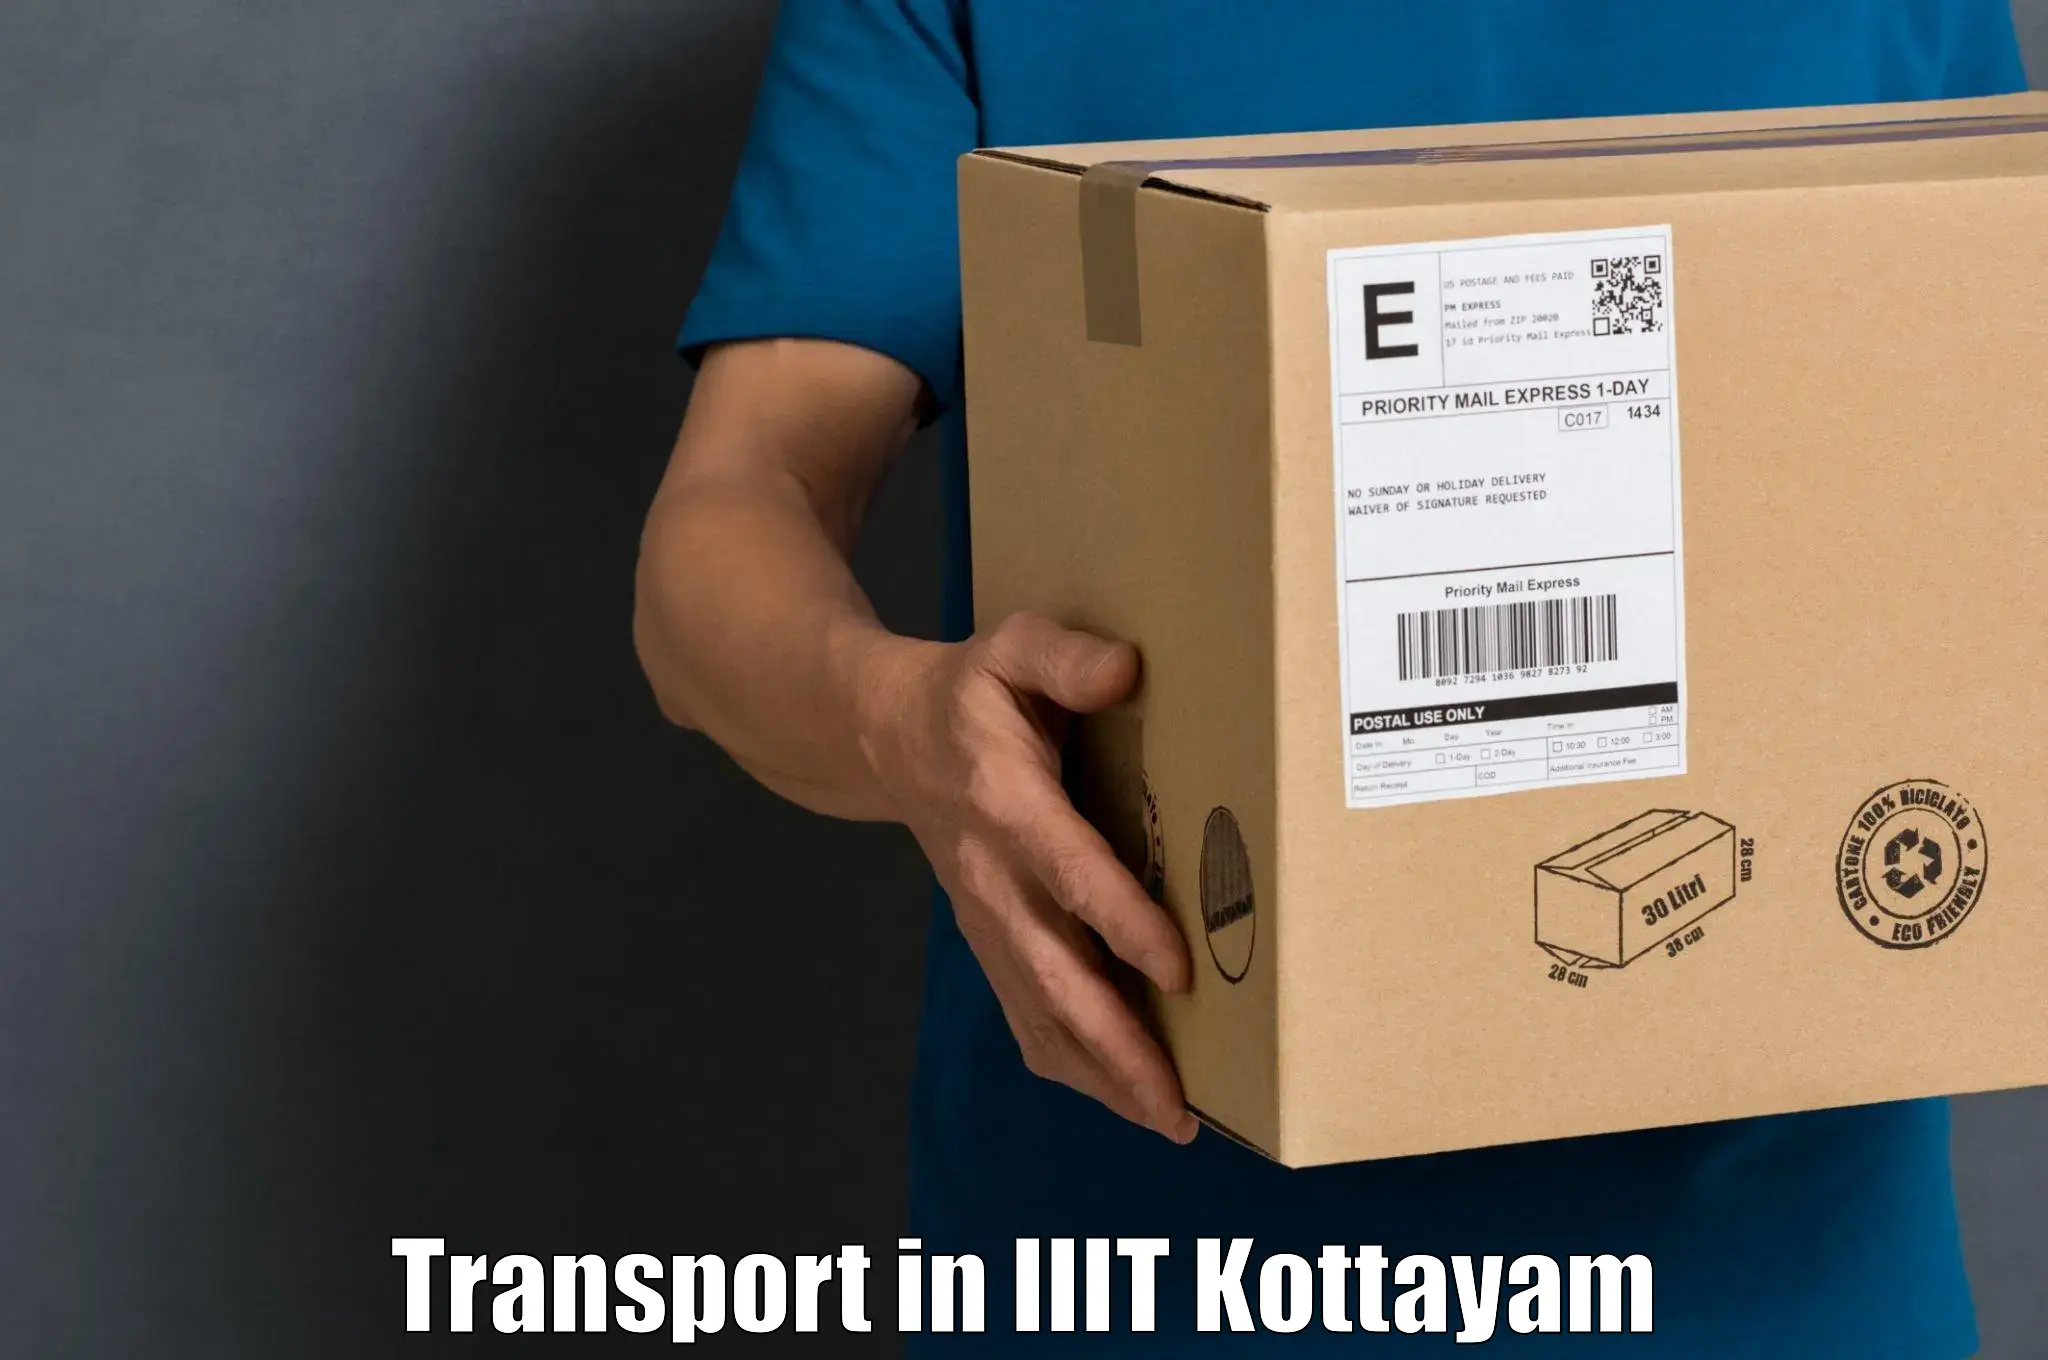 Online transport booking in IIIT Kottayam